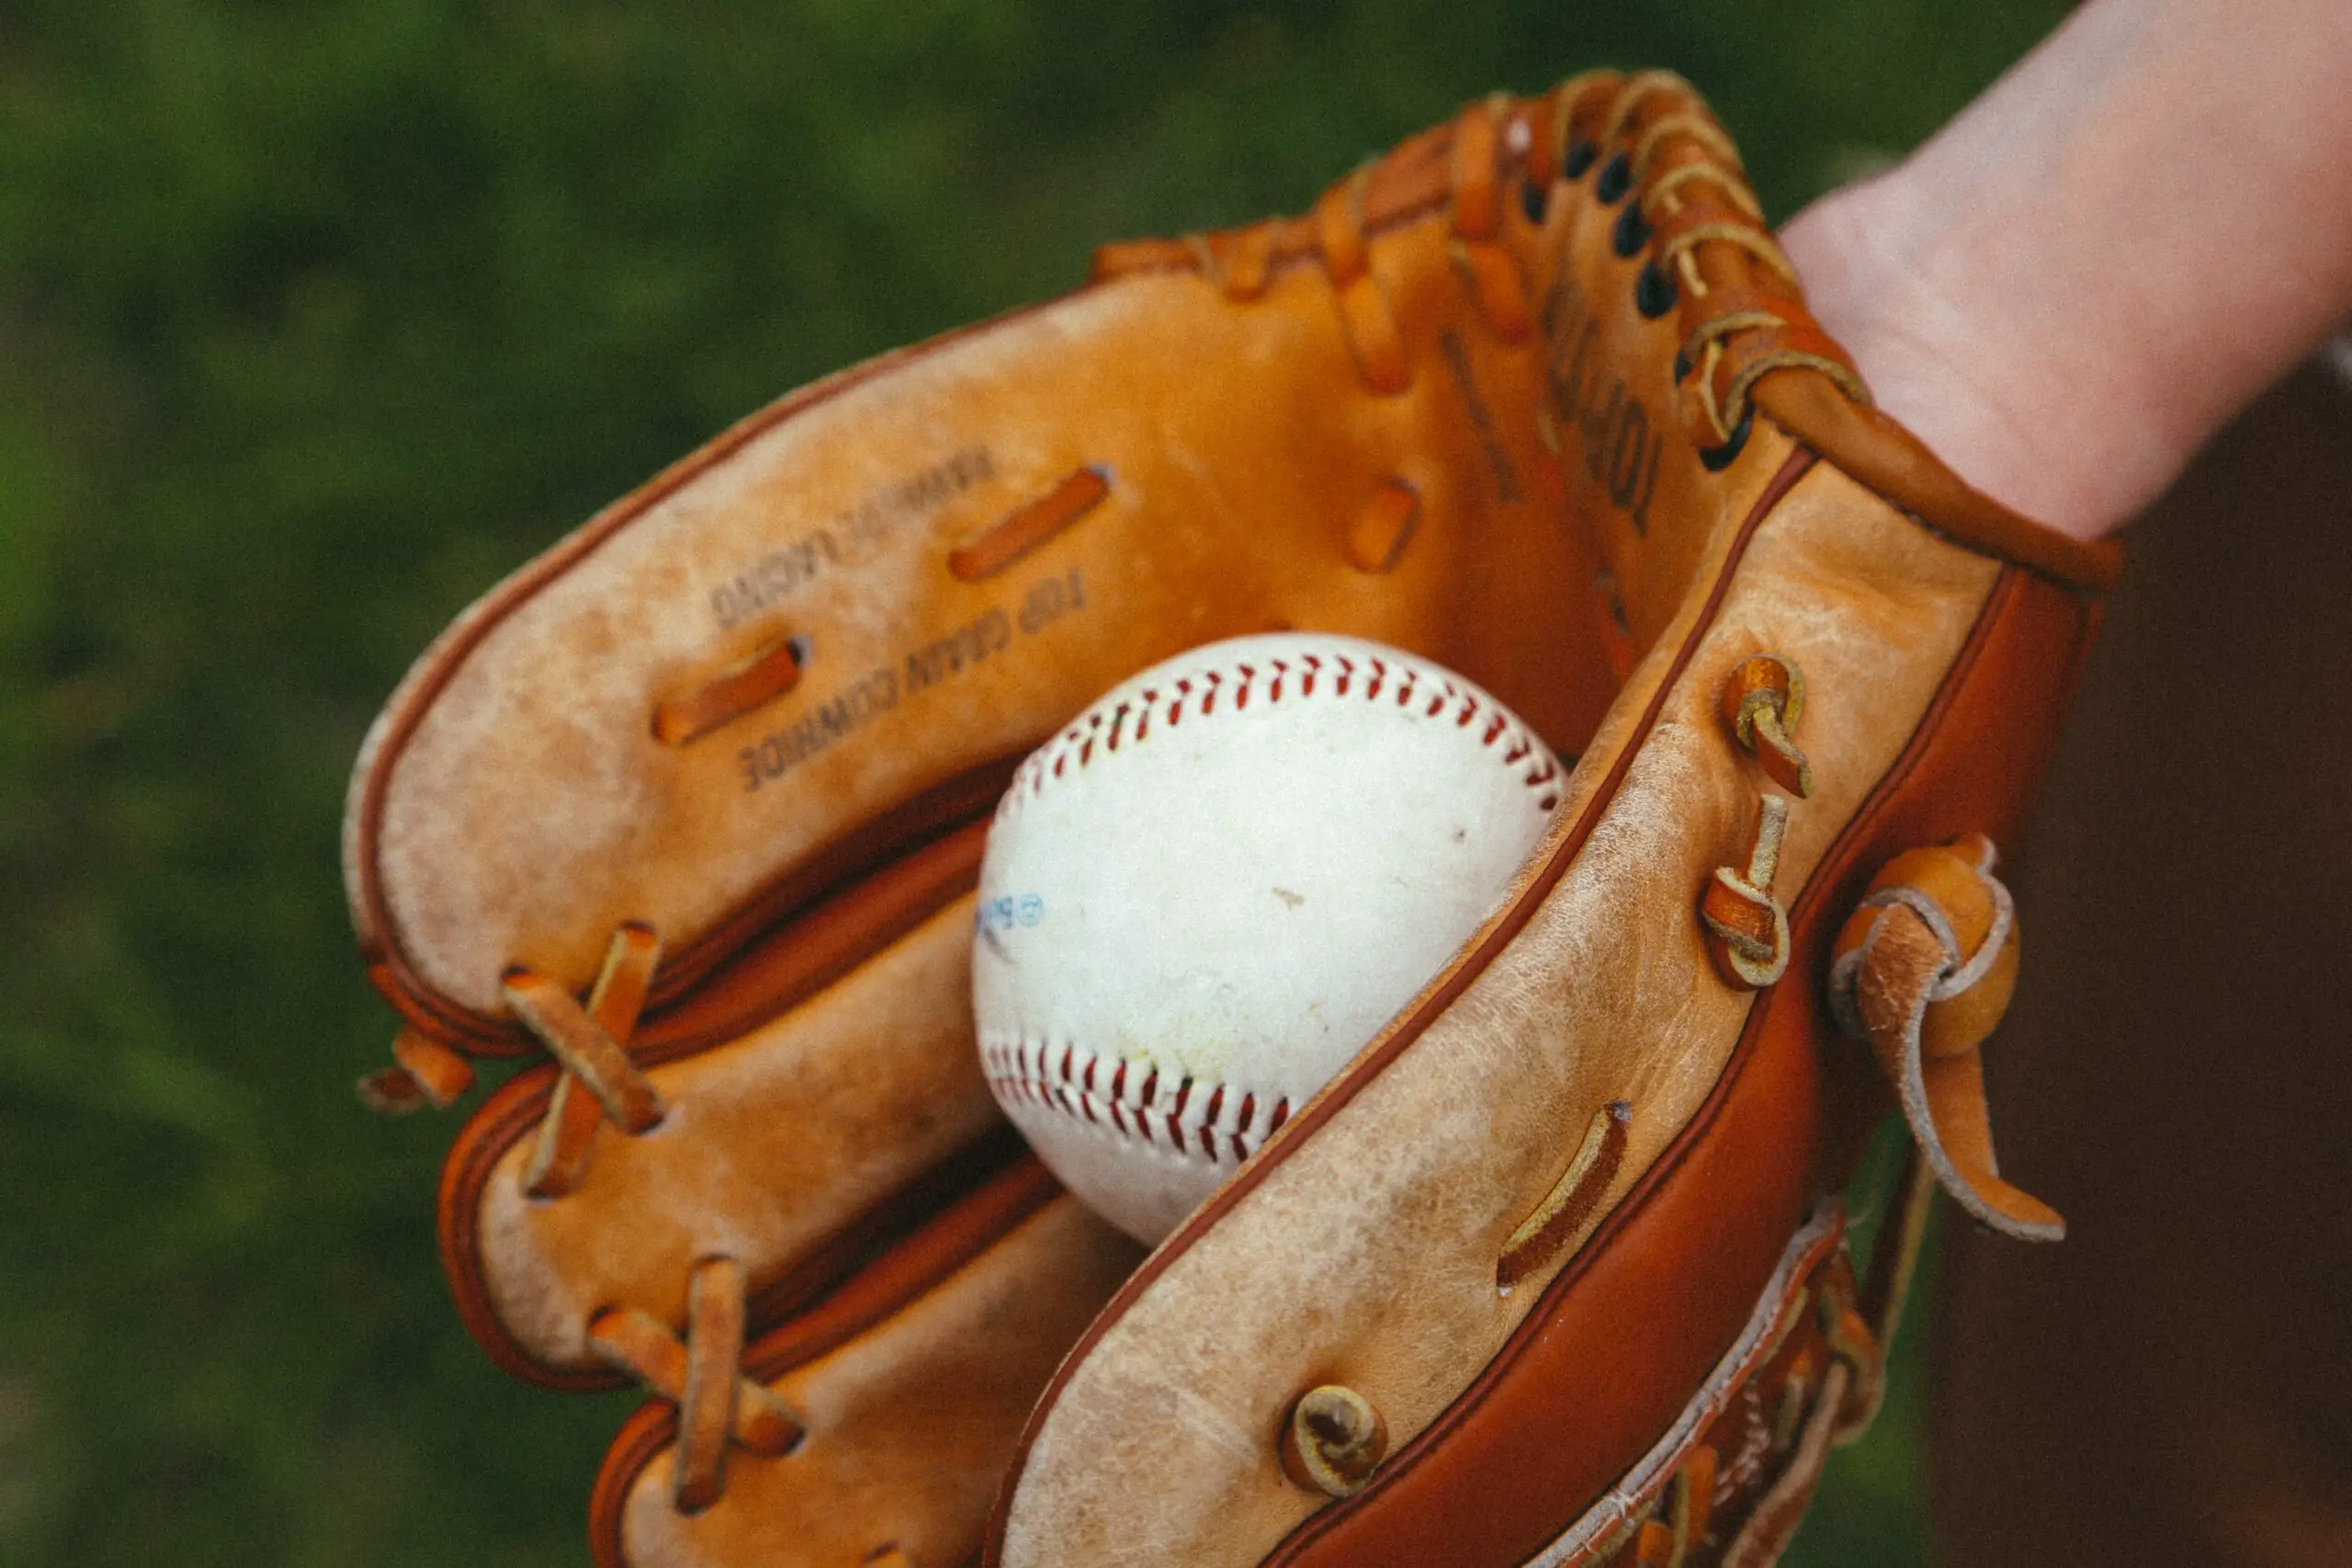 Do Baseball Gloves Need Oil?